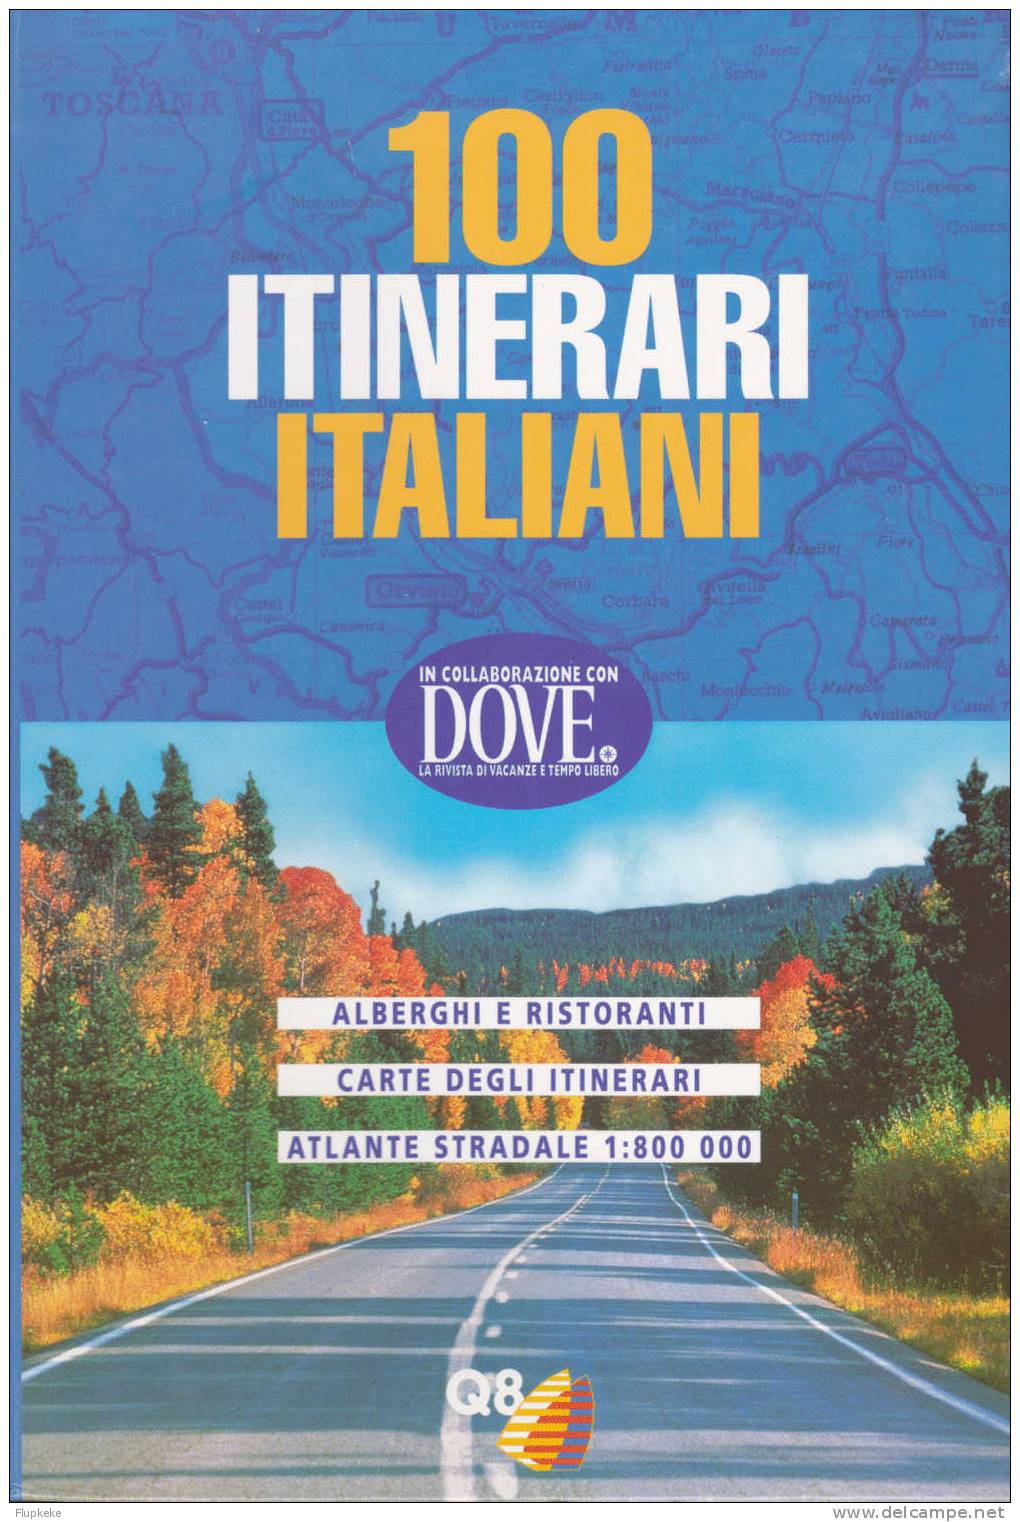 100 Itinerari Italiani Q8 Dove 1996 - Toursim & Travels